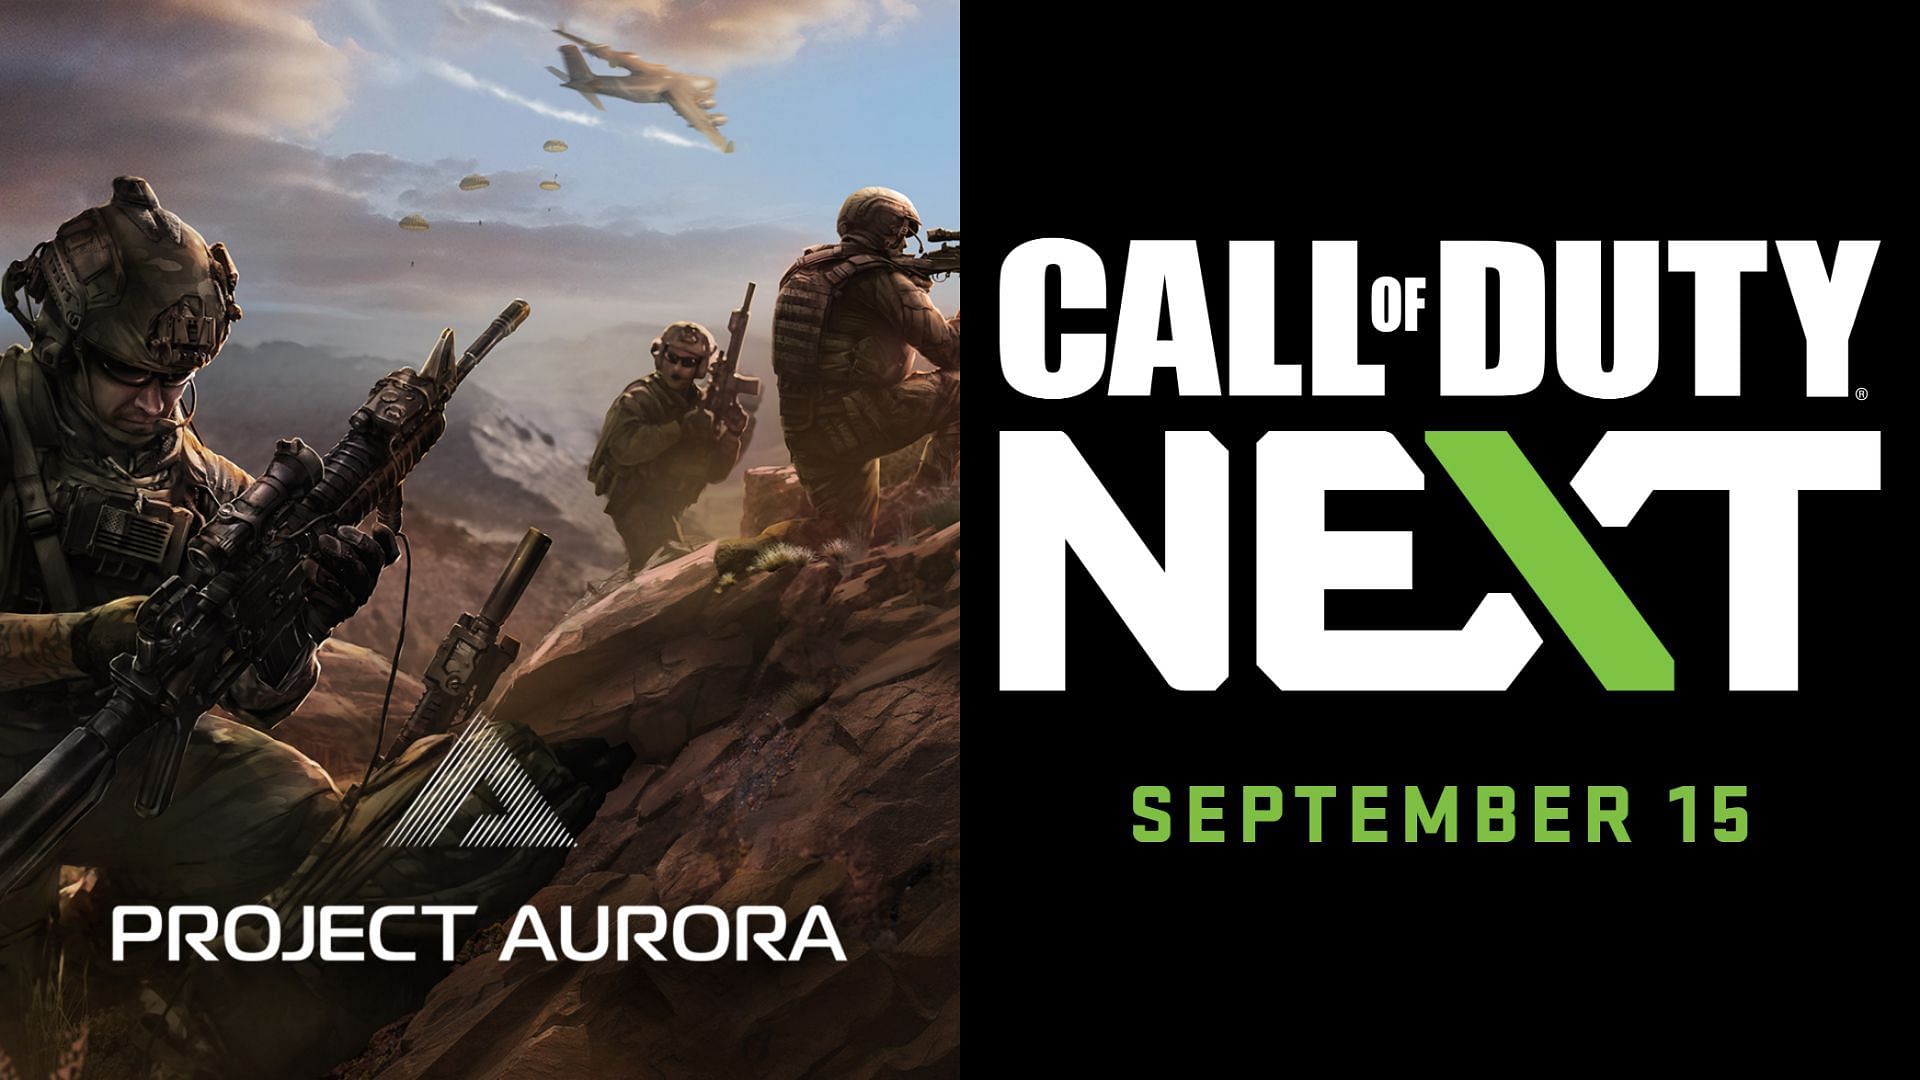 Evento de exhibición de Call of Duty Next fecha de inicio, todas las